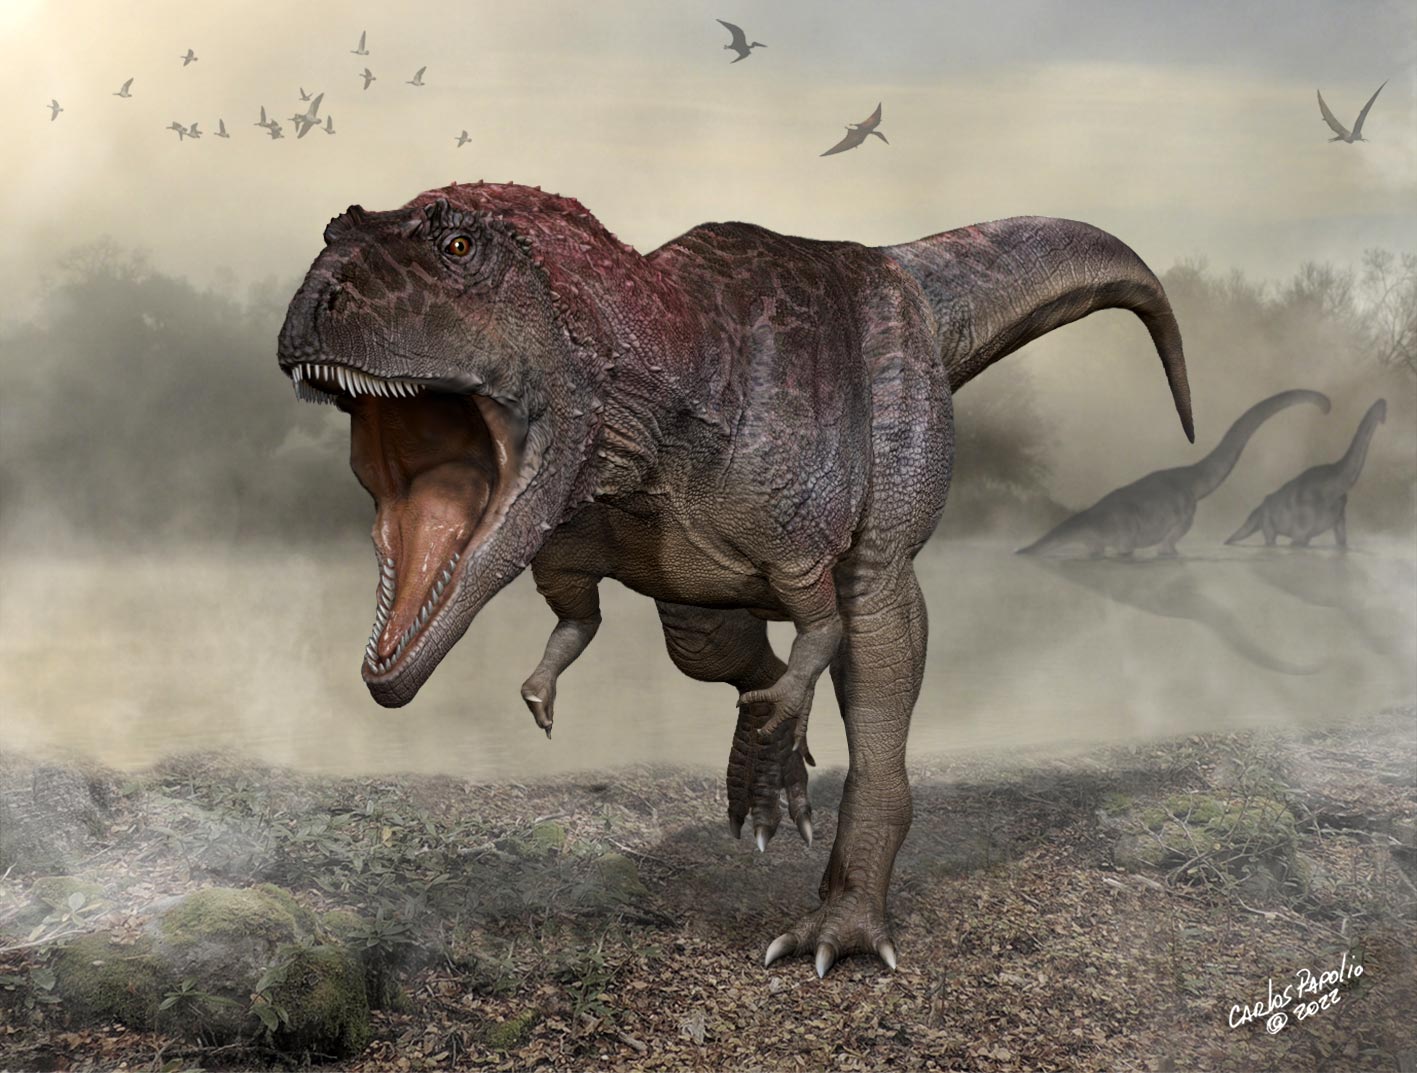 Objevte nového obřího masožravého dinosaura s drobnými pažemi jako T. rex